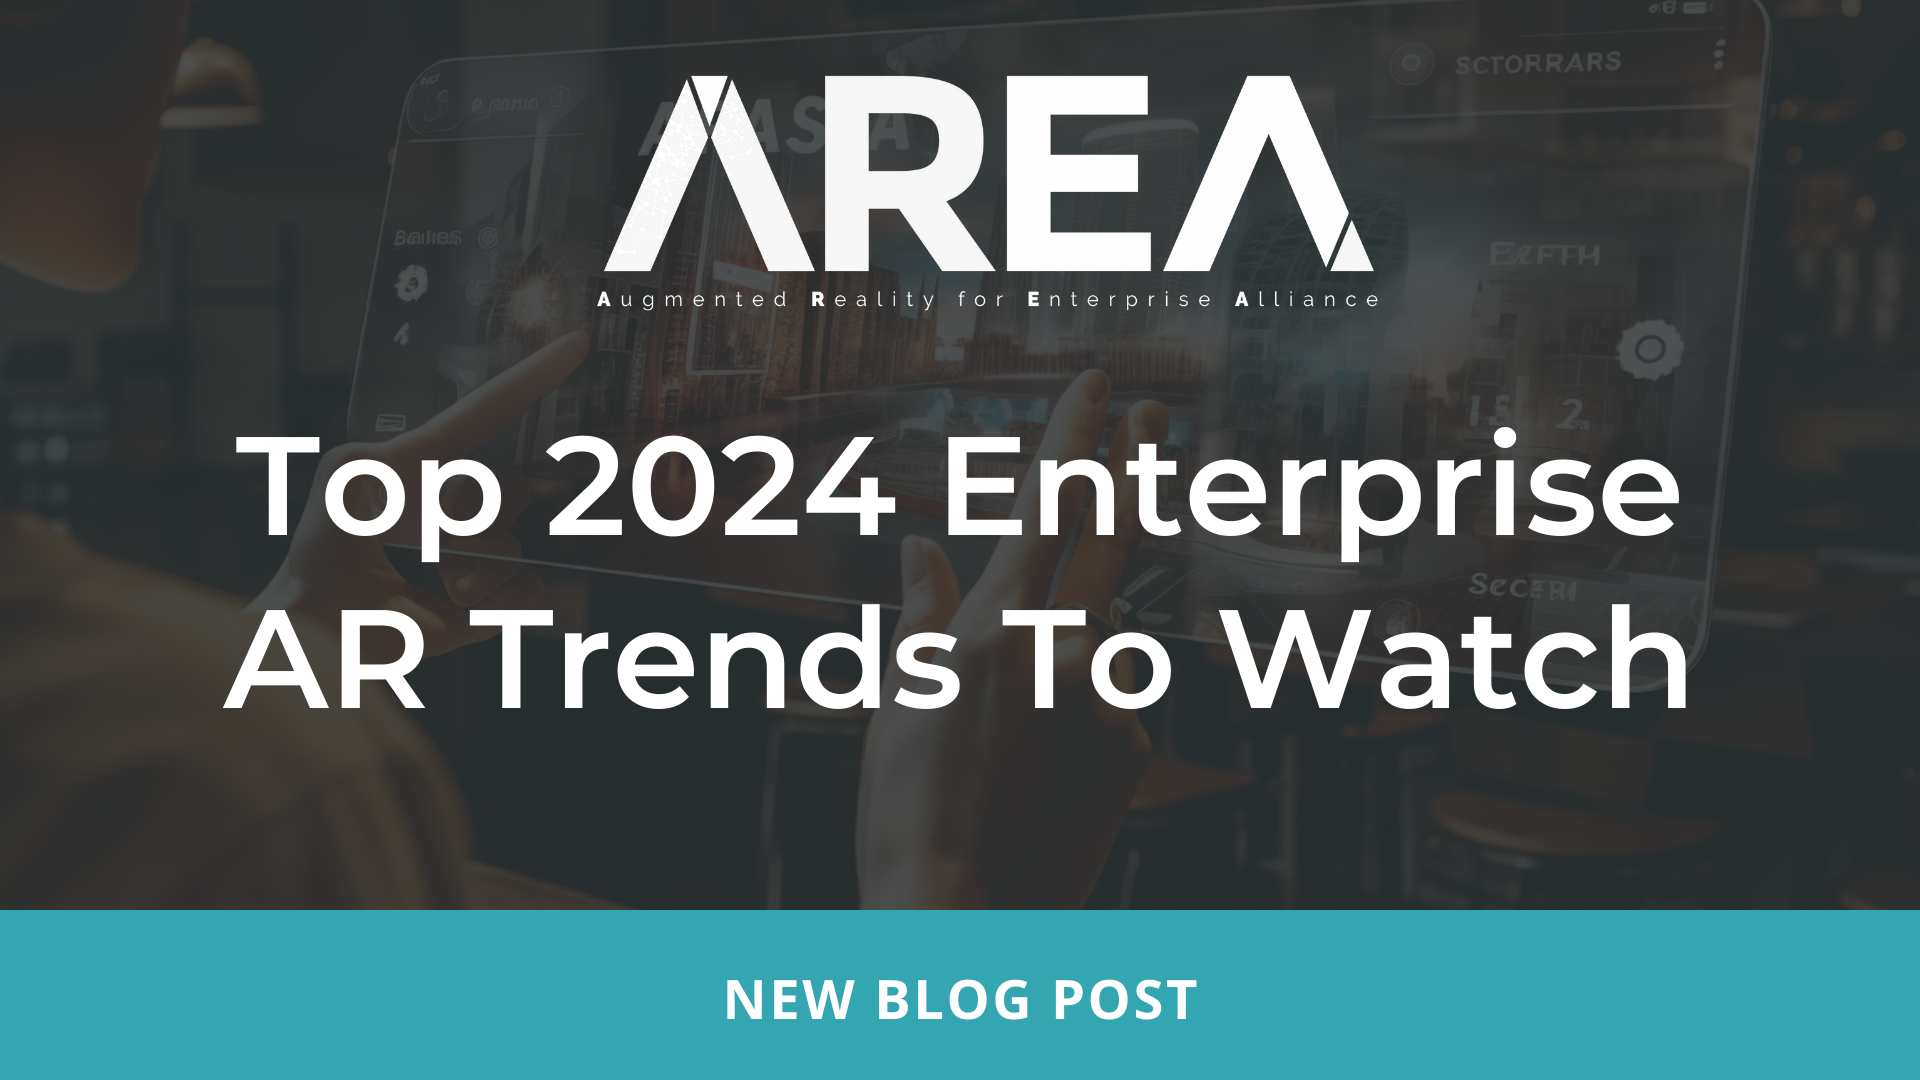 A legnépszerűbb 2024-es vállalati AR-trendek – TERÜLET